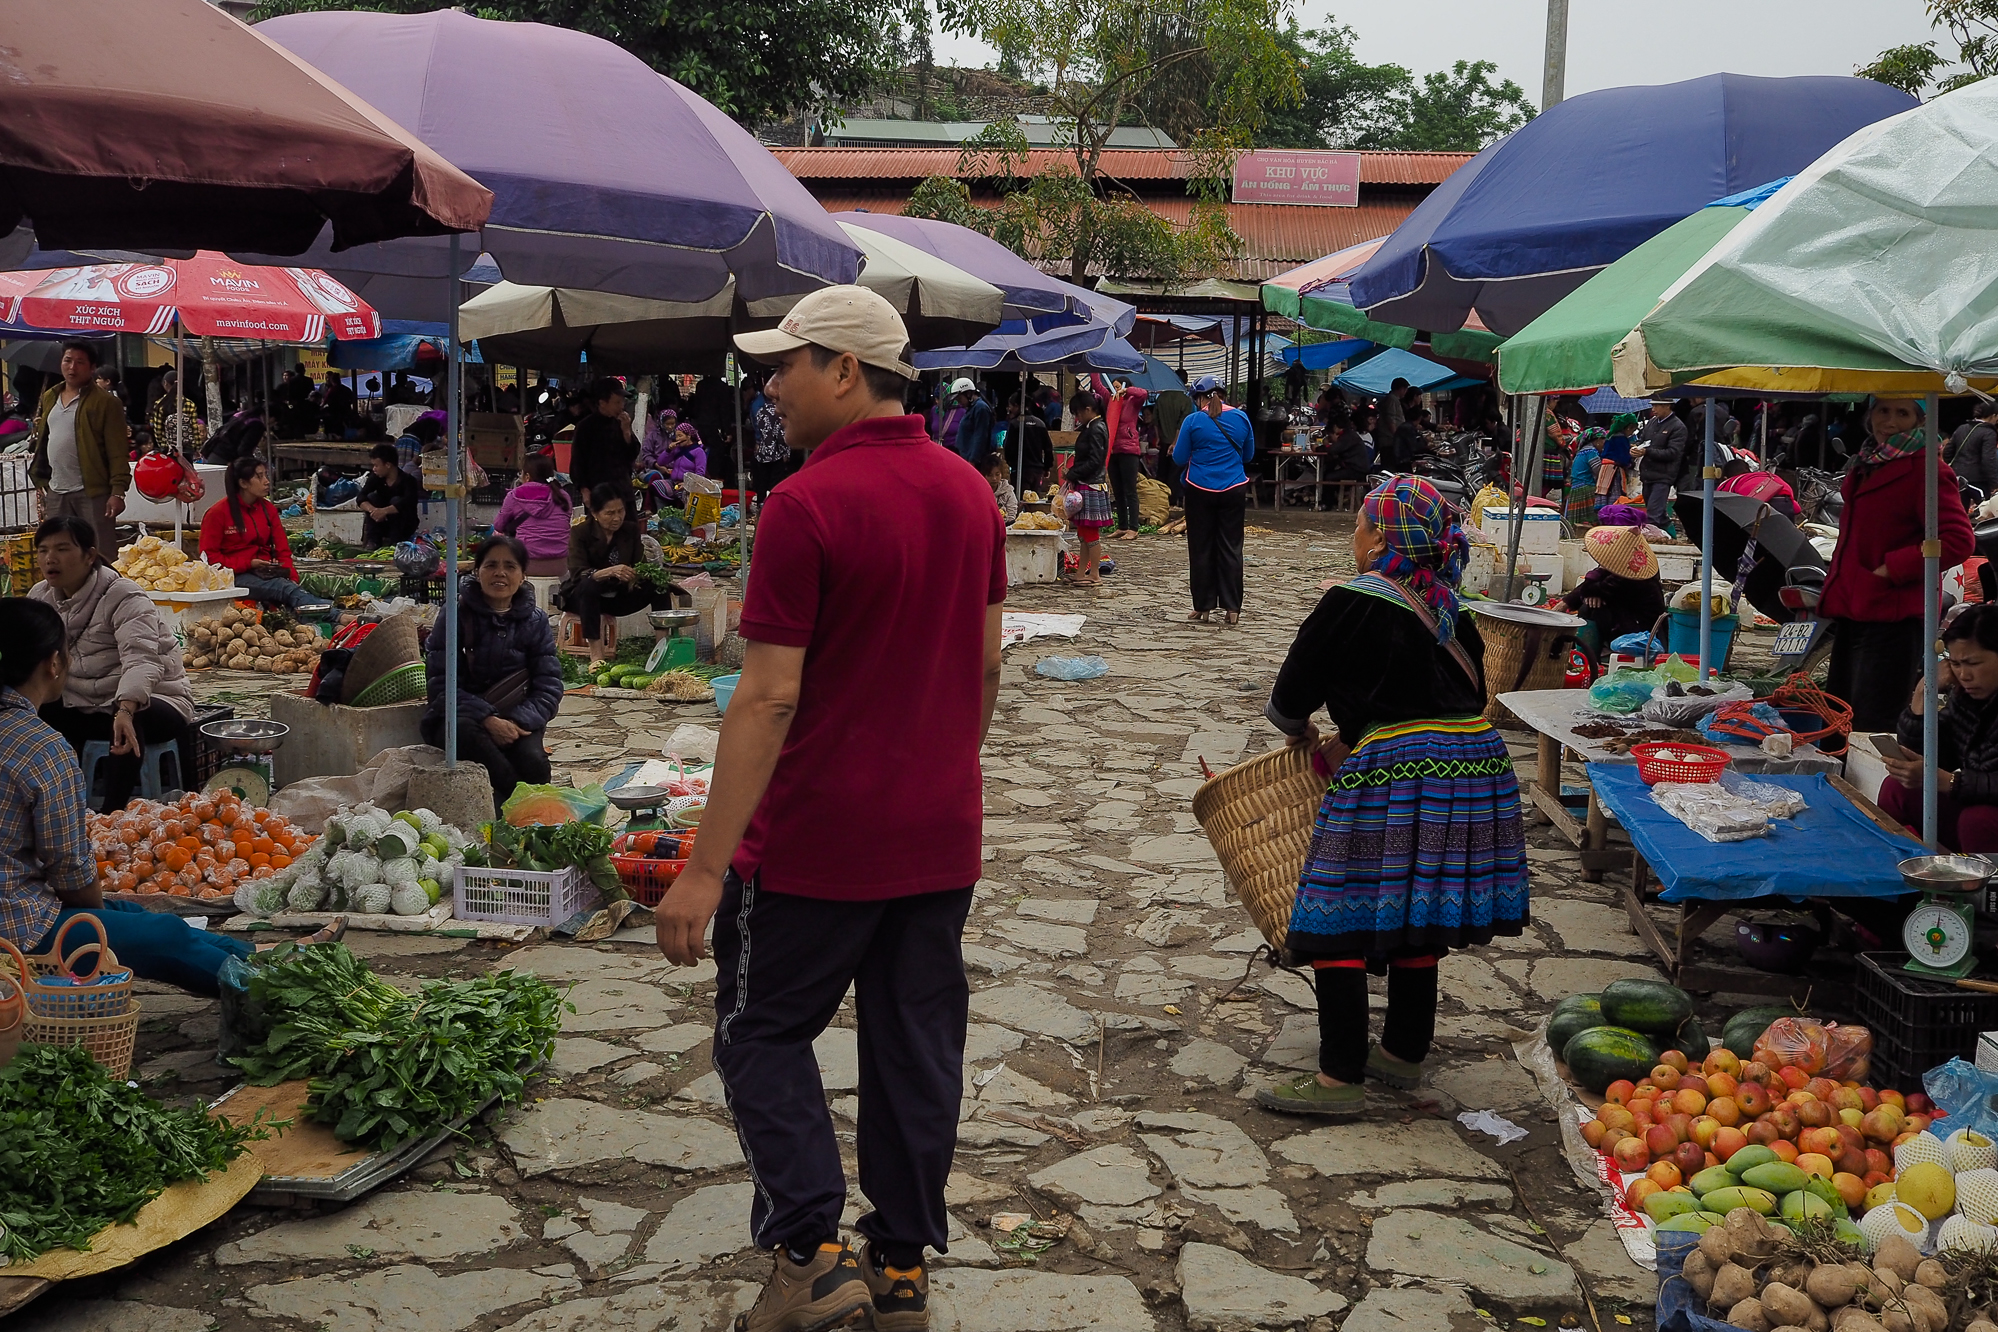 visiter Bao lac marché nord vietnam